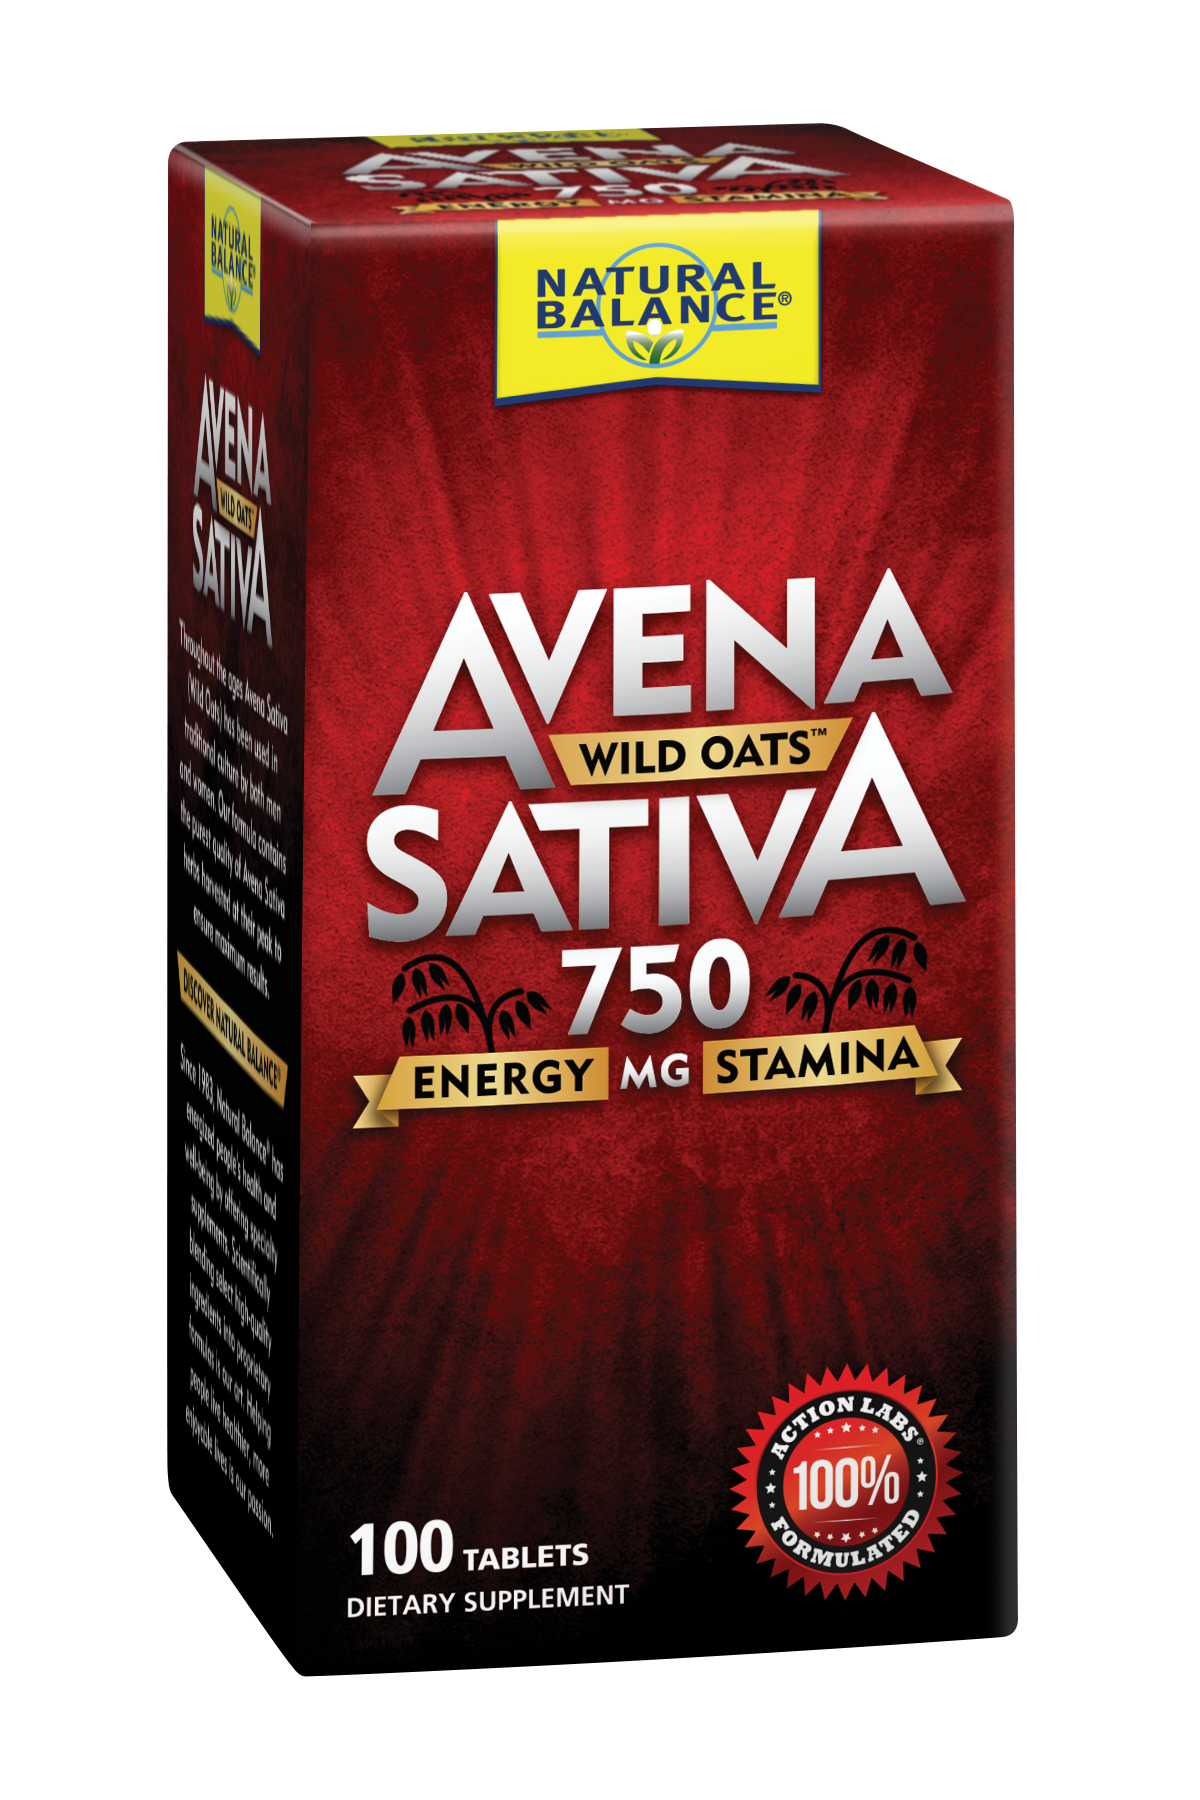 Avena Sativa Wild Oats | Energy & Stamina